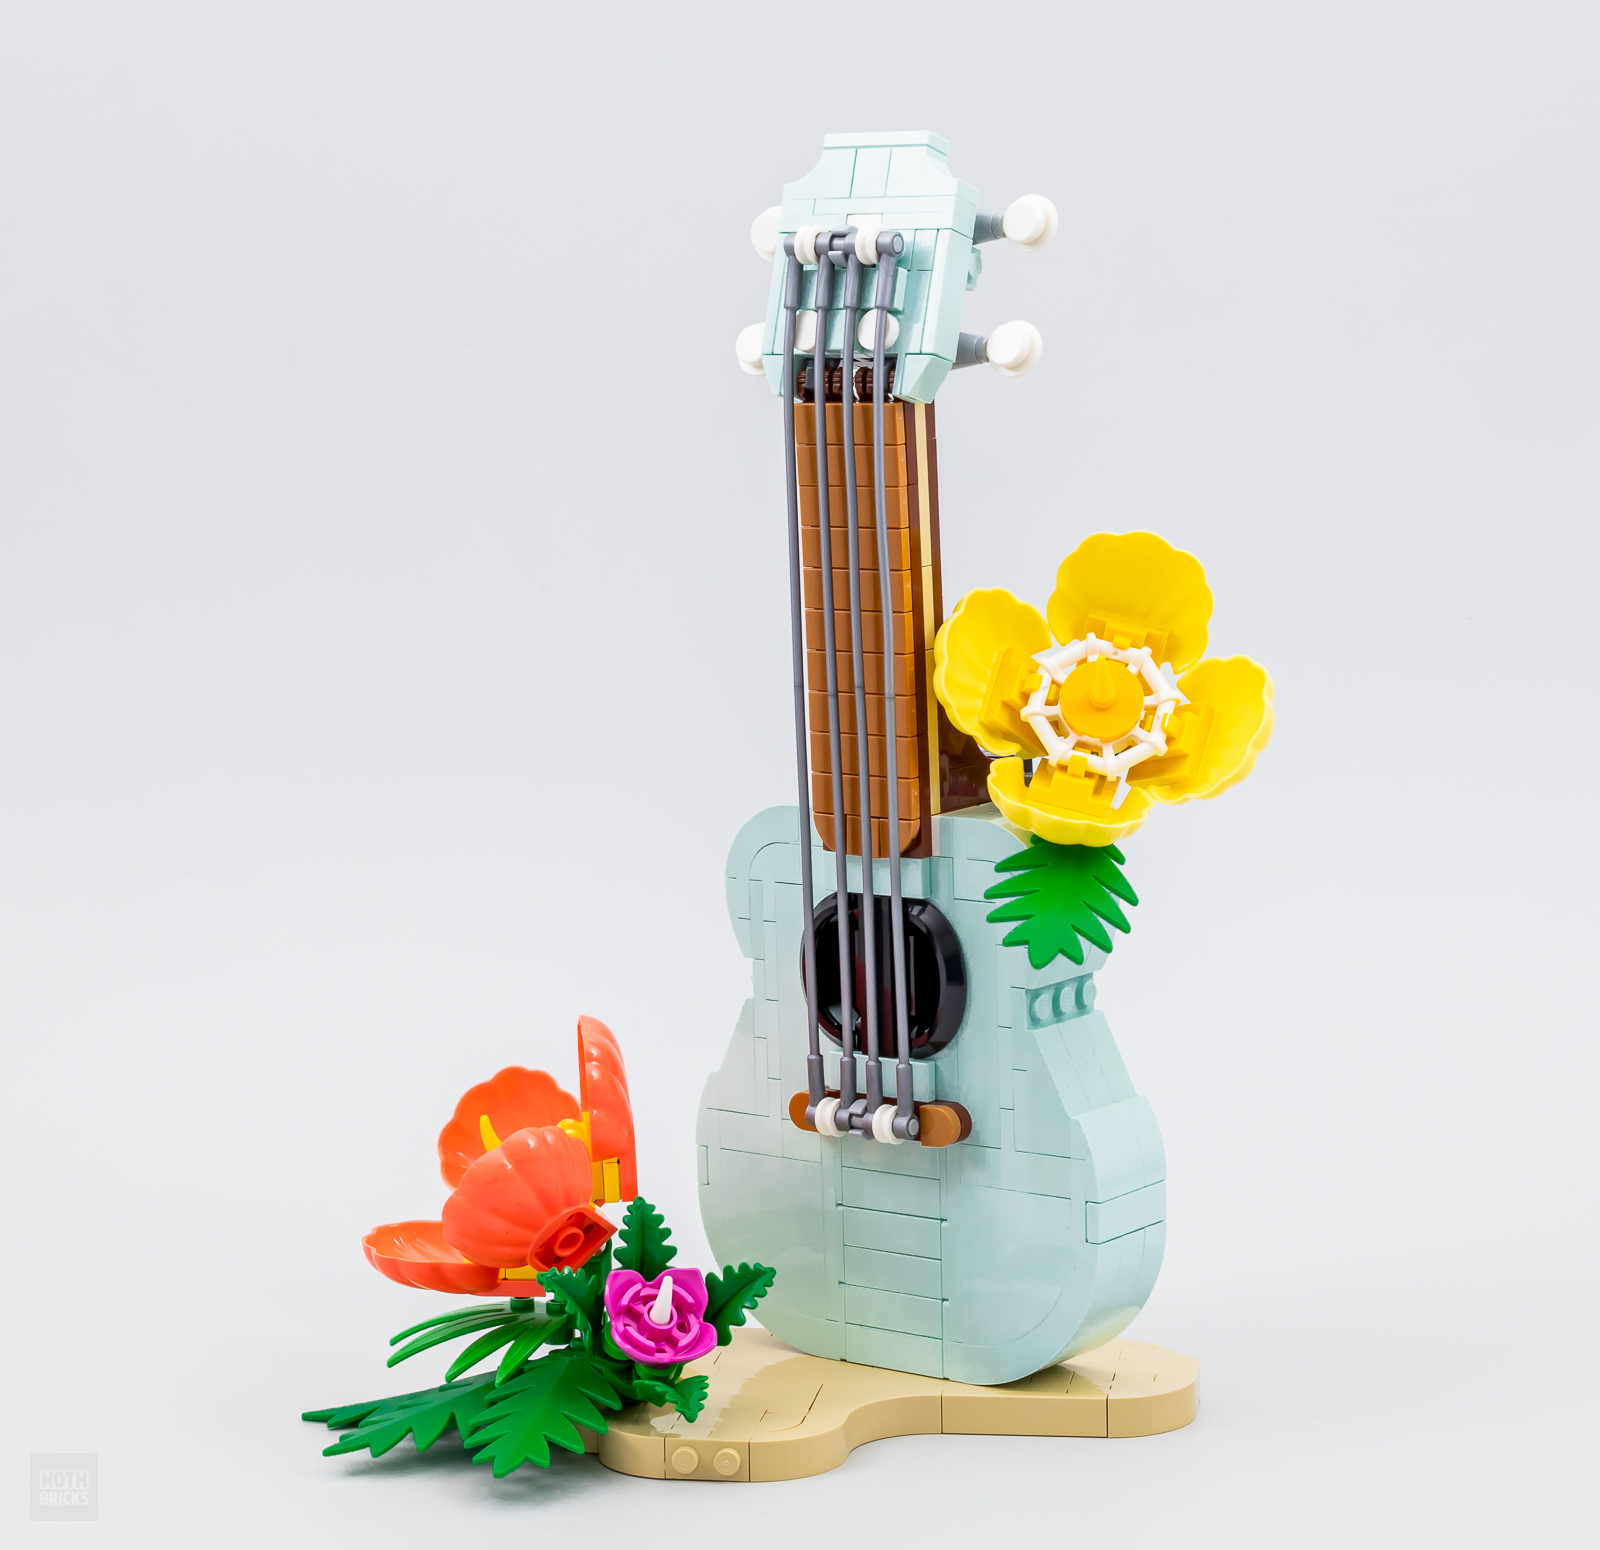 Kit créatif pour enfant Je fabrique ma guitare ElectriK